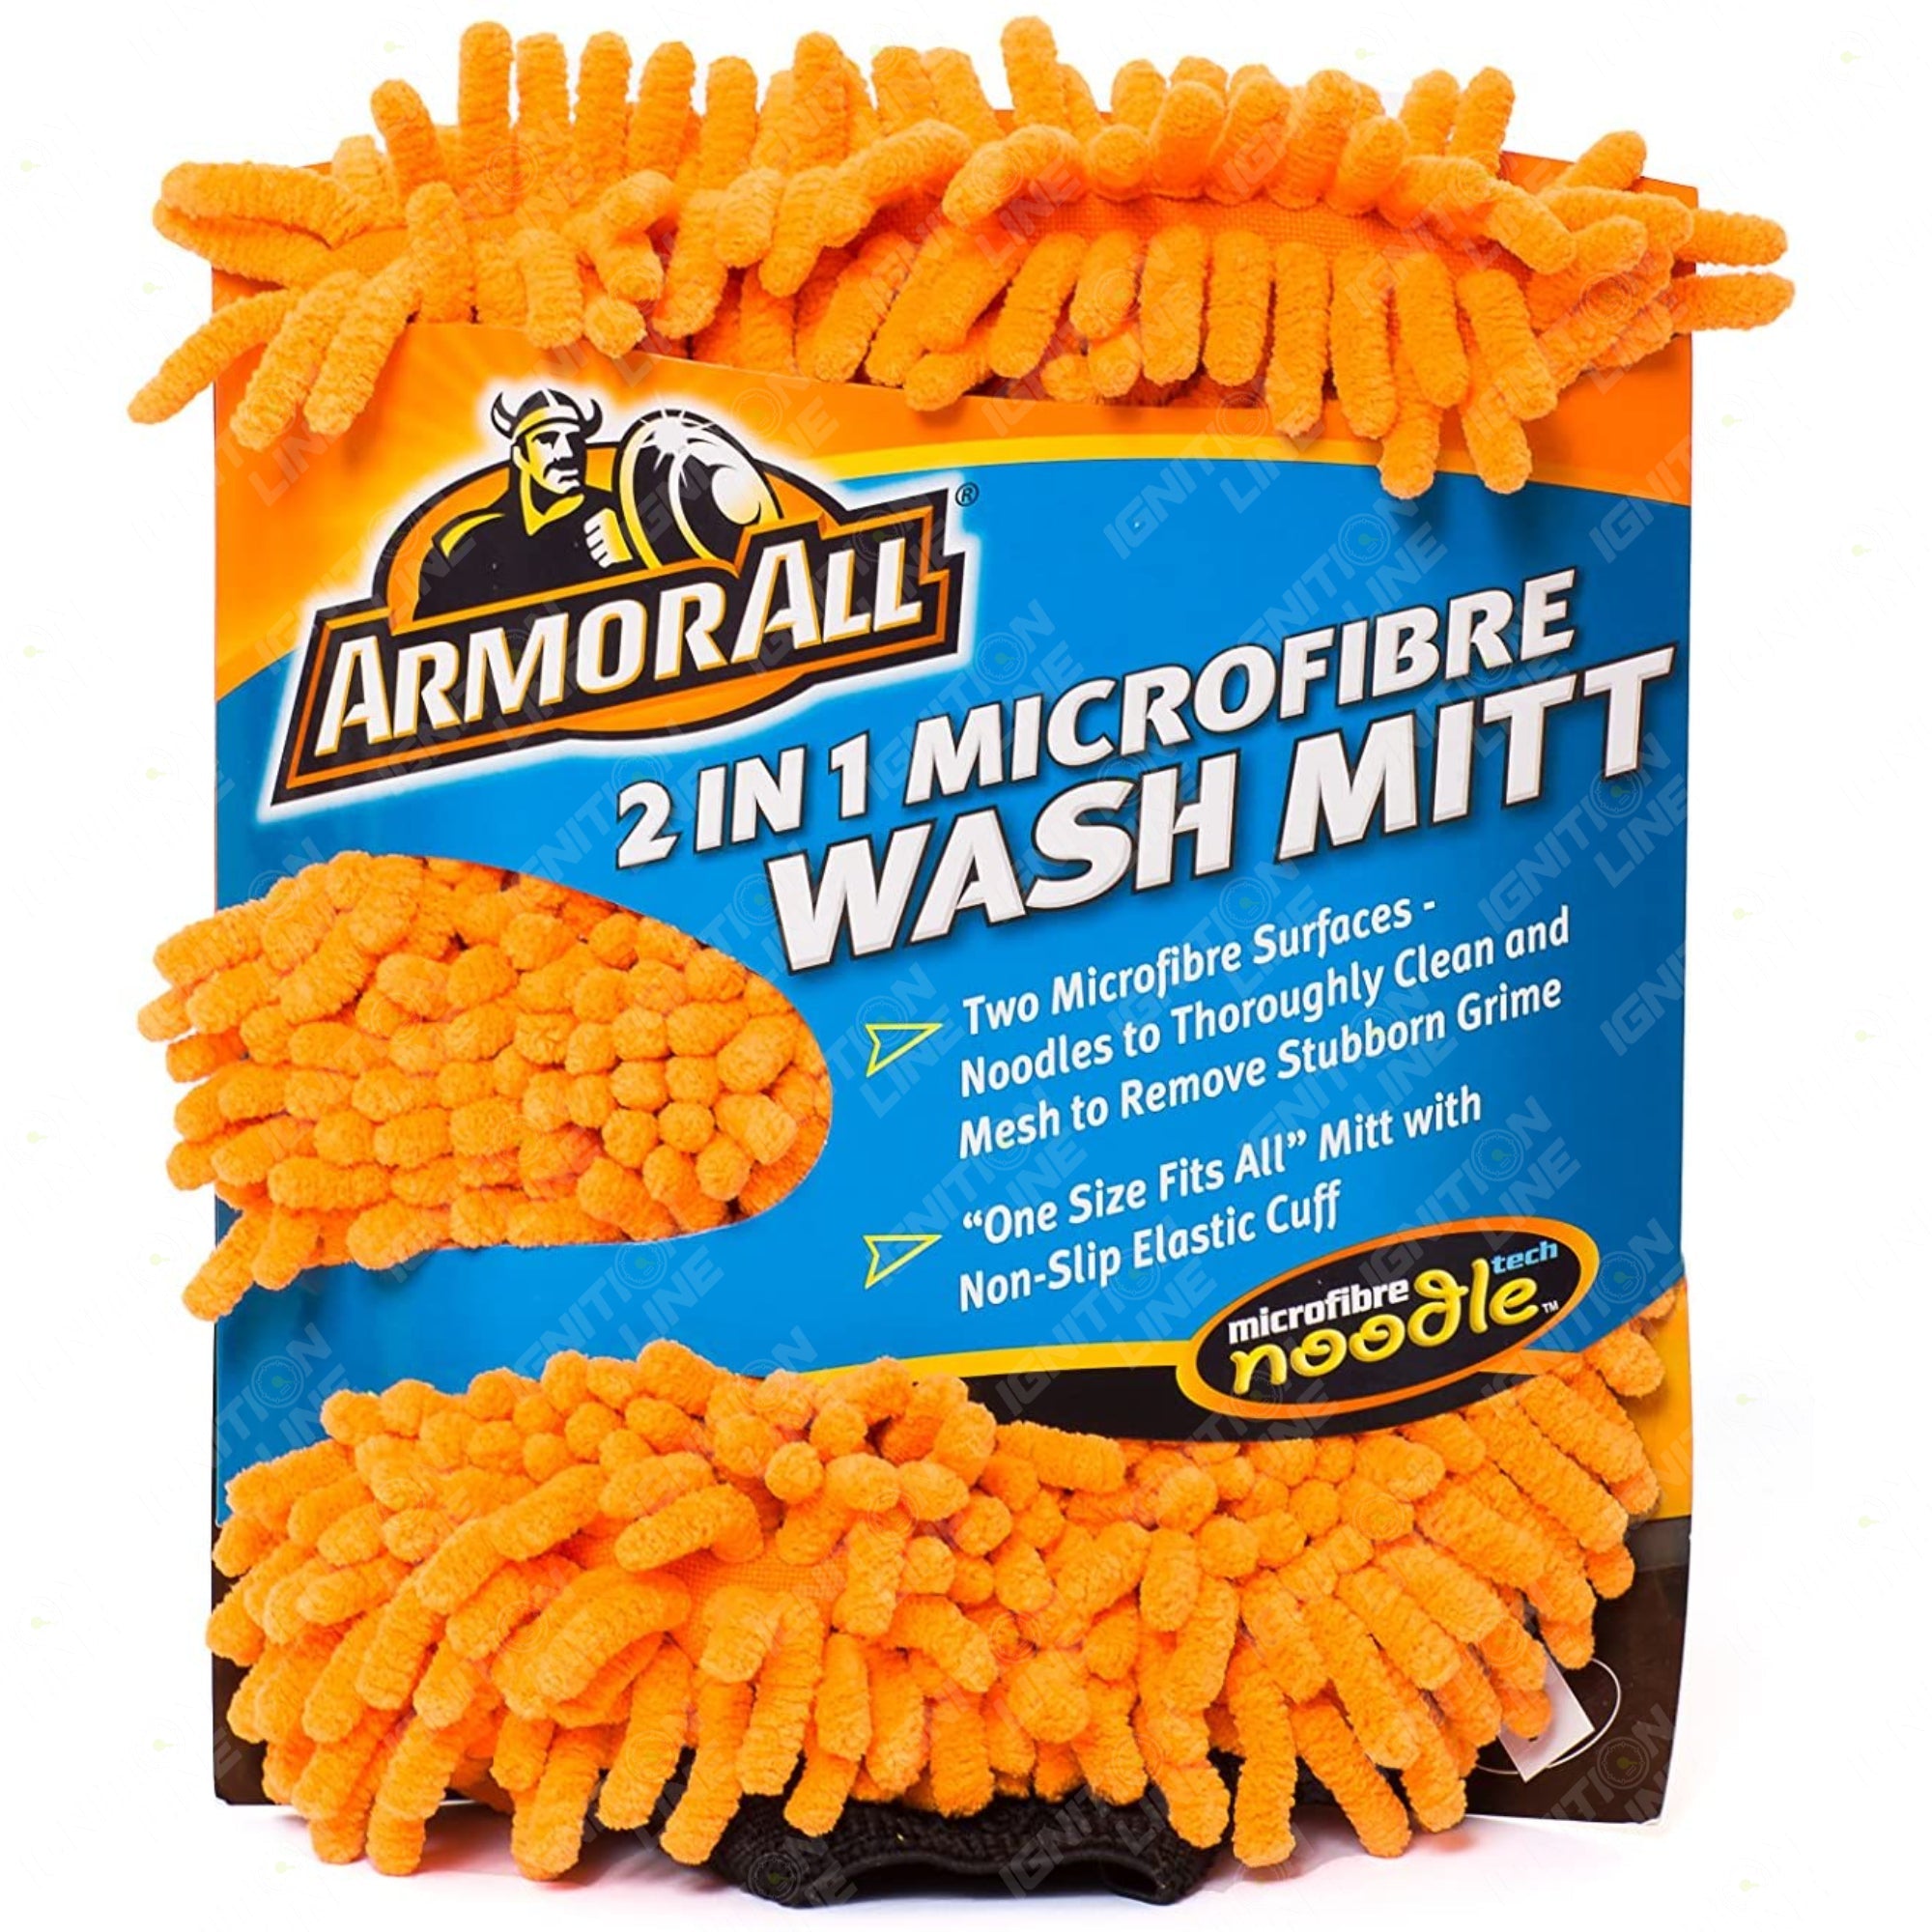 Armorall 2in1 Microfibre Wash Mitt